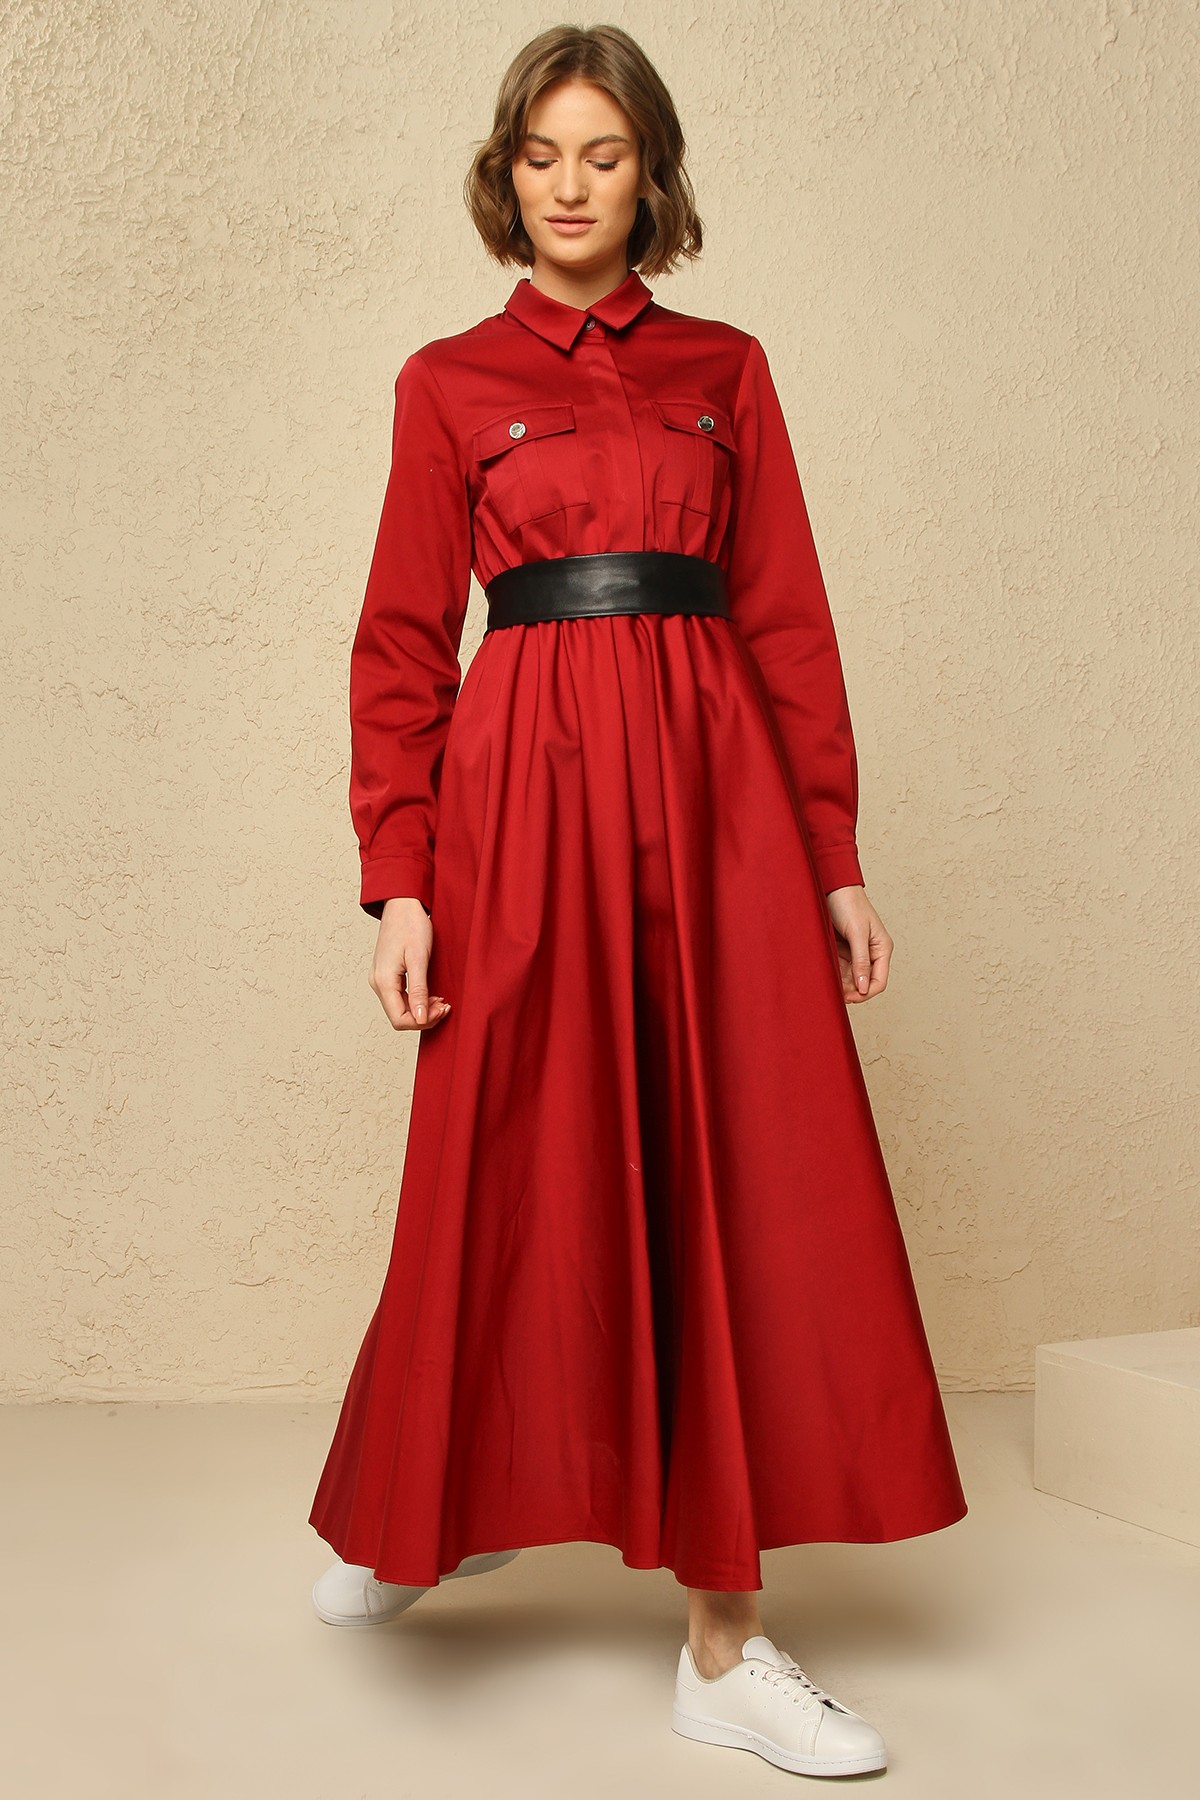 Pocket Detailed Dress - Red